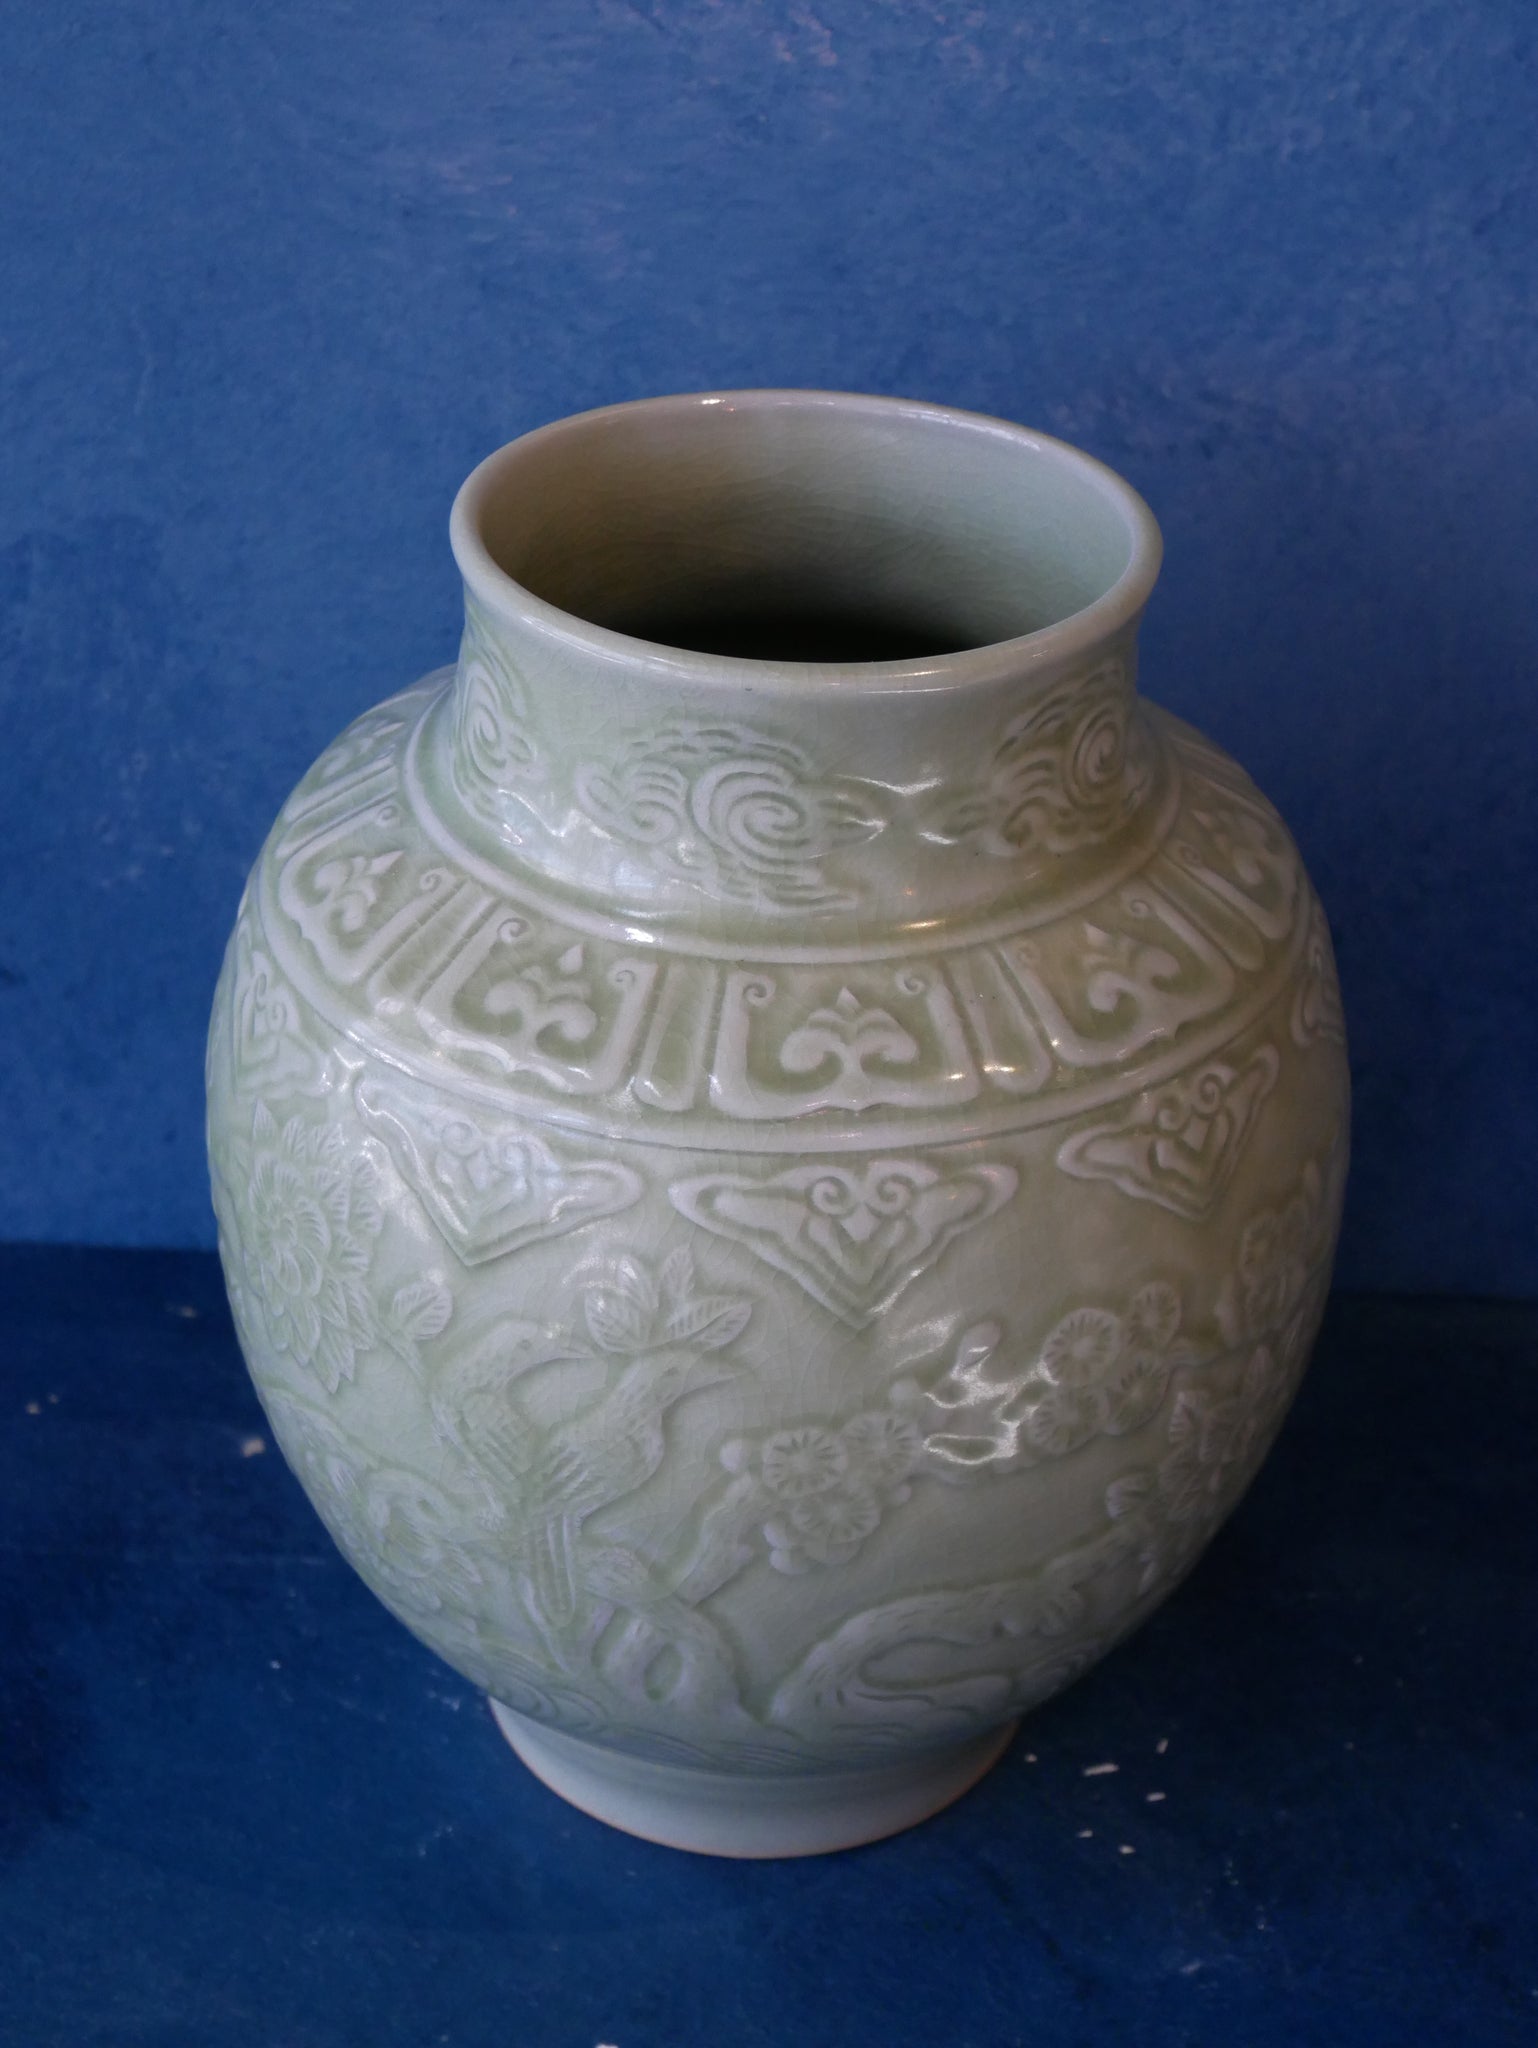 Green Celadon Vase - I